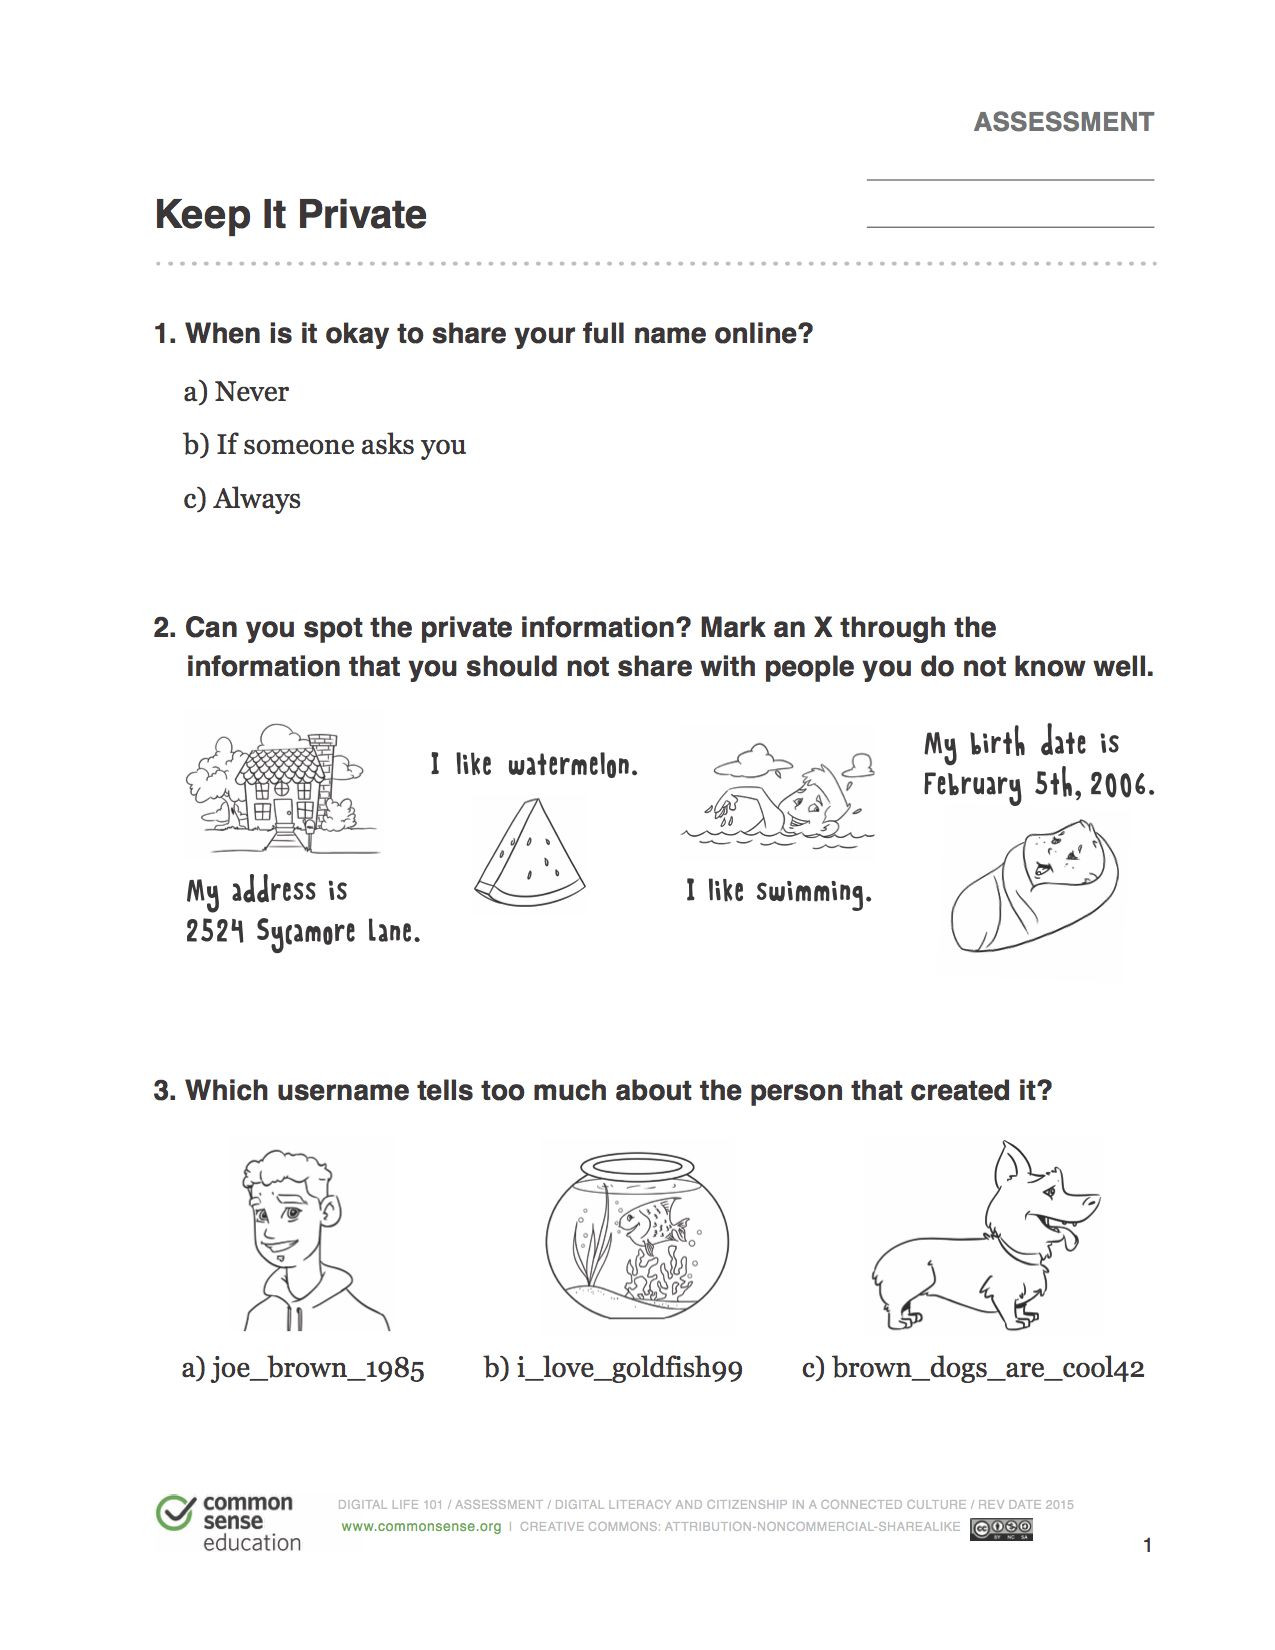 Internet Safety Worksheets Printable Internet Safety Worksheet for Kids